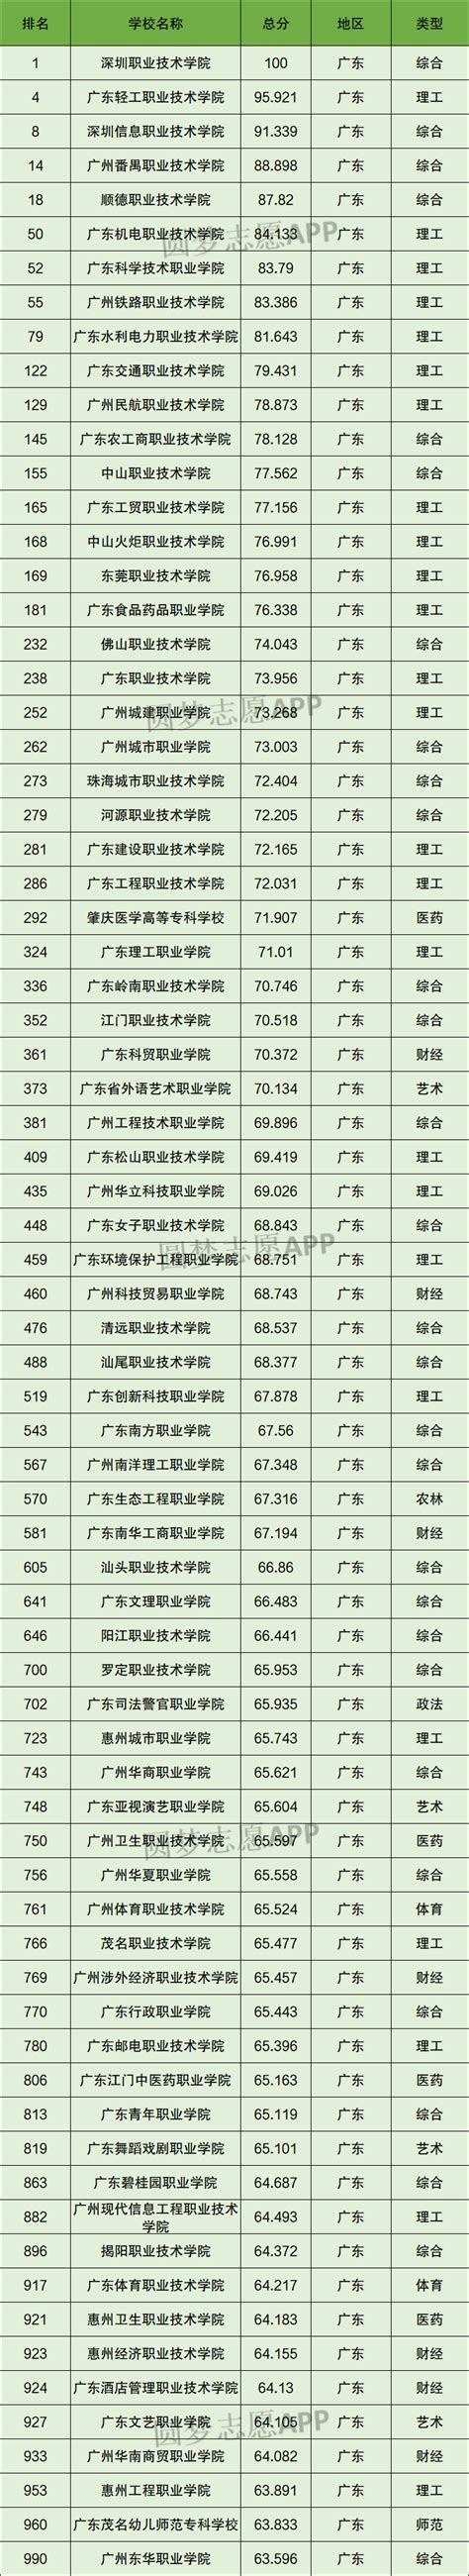 专科院校排行榜_全国专科学校排名2015 第一篇_2015-2016年中国专科院校排_中国排行网